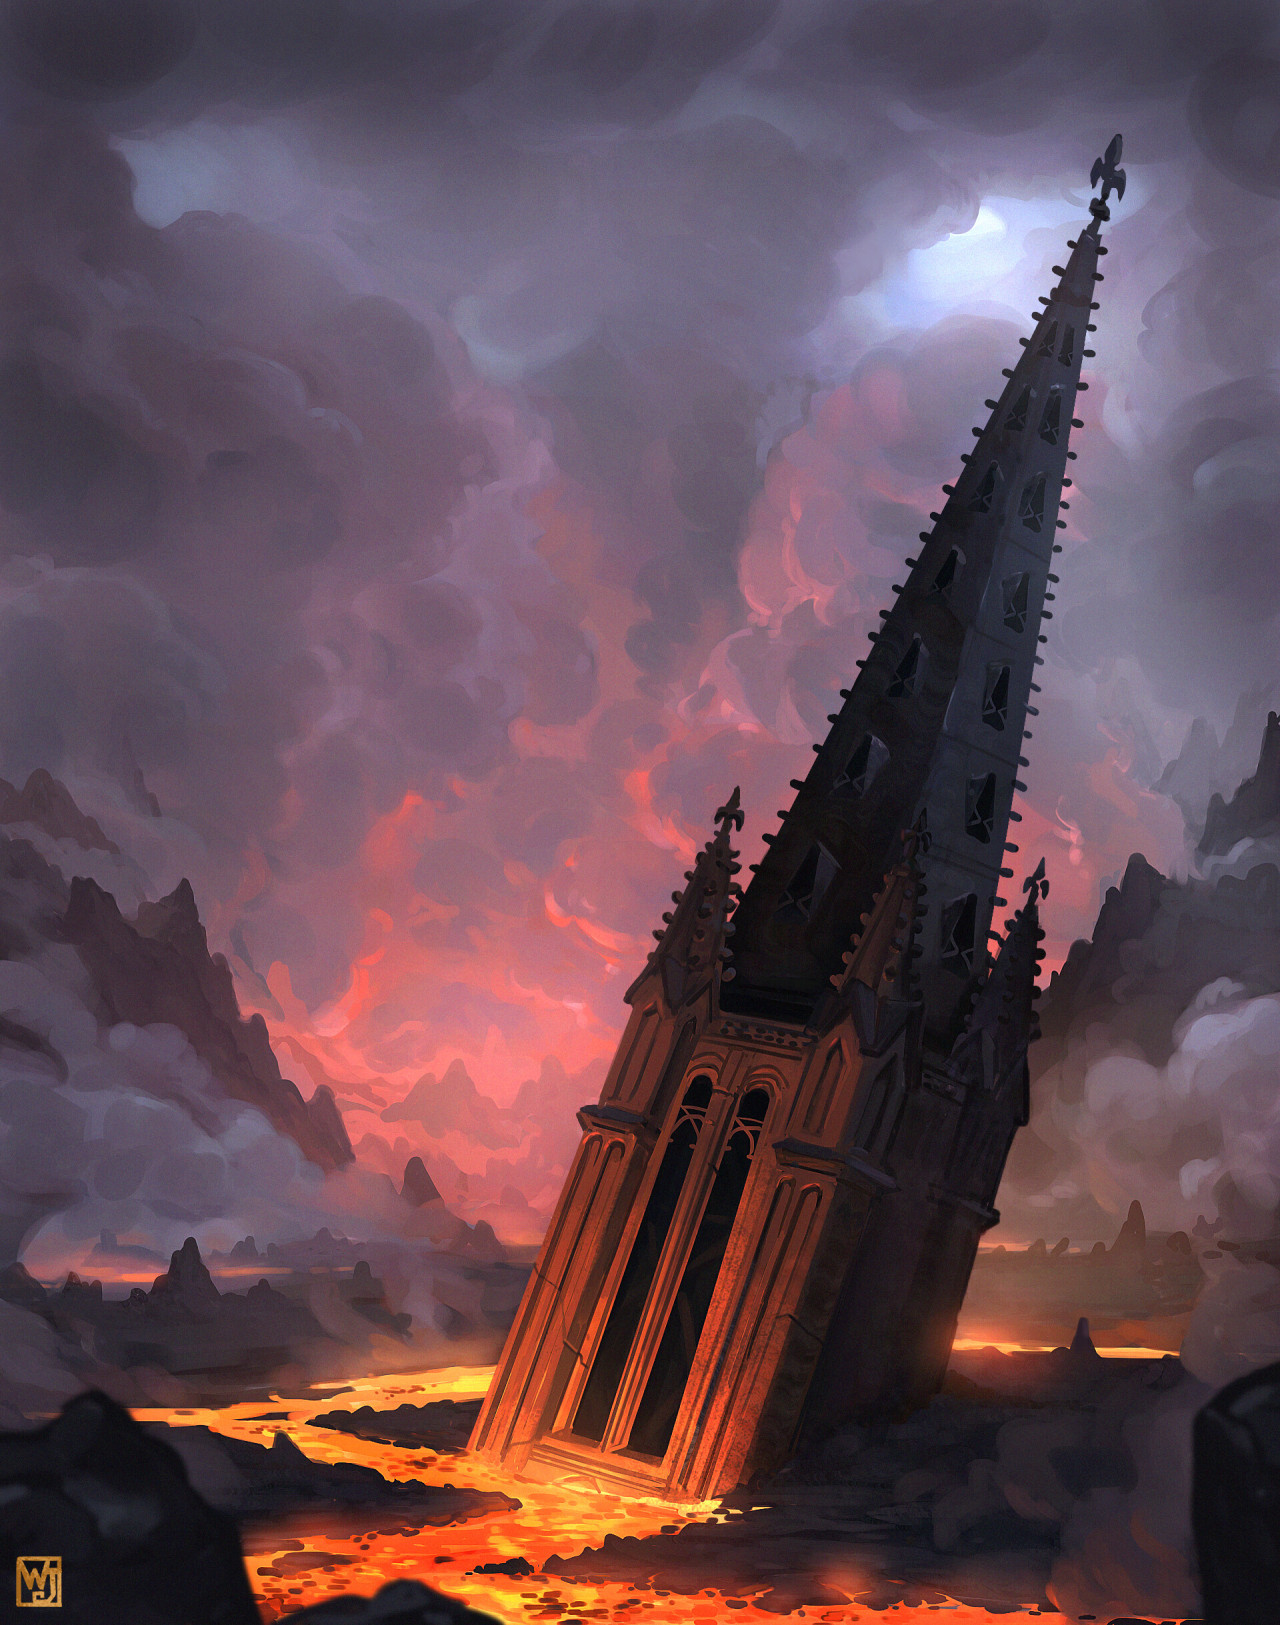 The Last Bells by  Jean Walter #art#illustration#digital art#dark art#fantasy#architectural#fire#hell